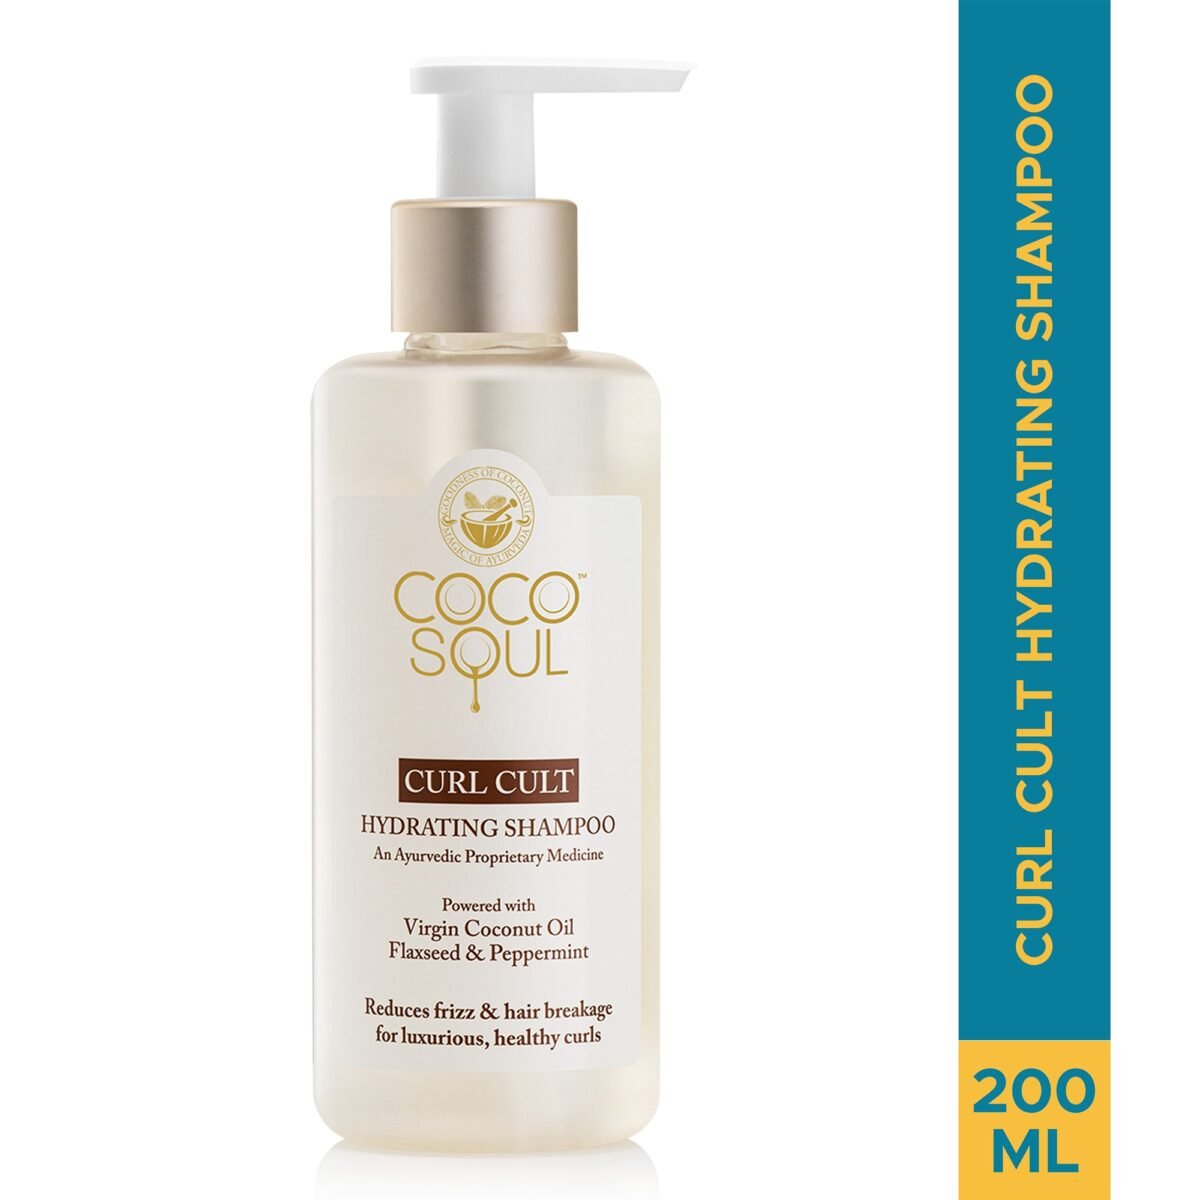 Coco Soul Curl Cult Hydrating Shampoo 200ml